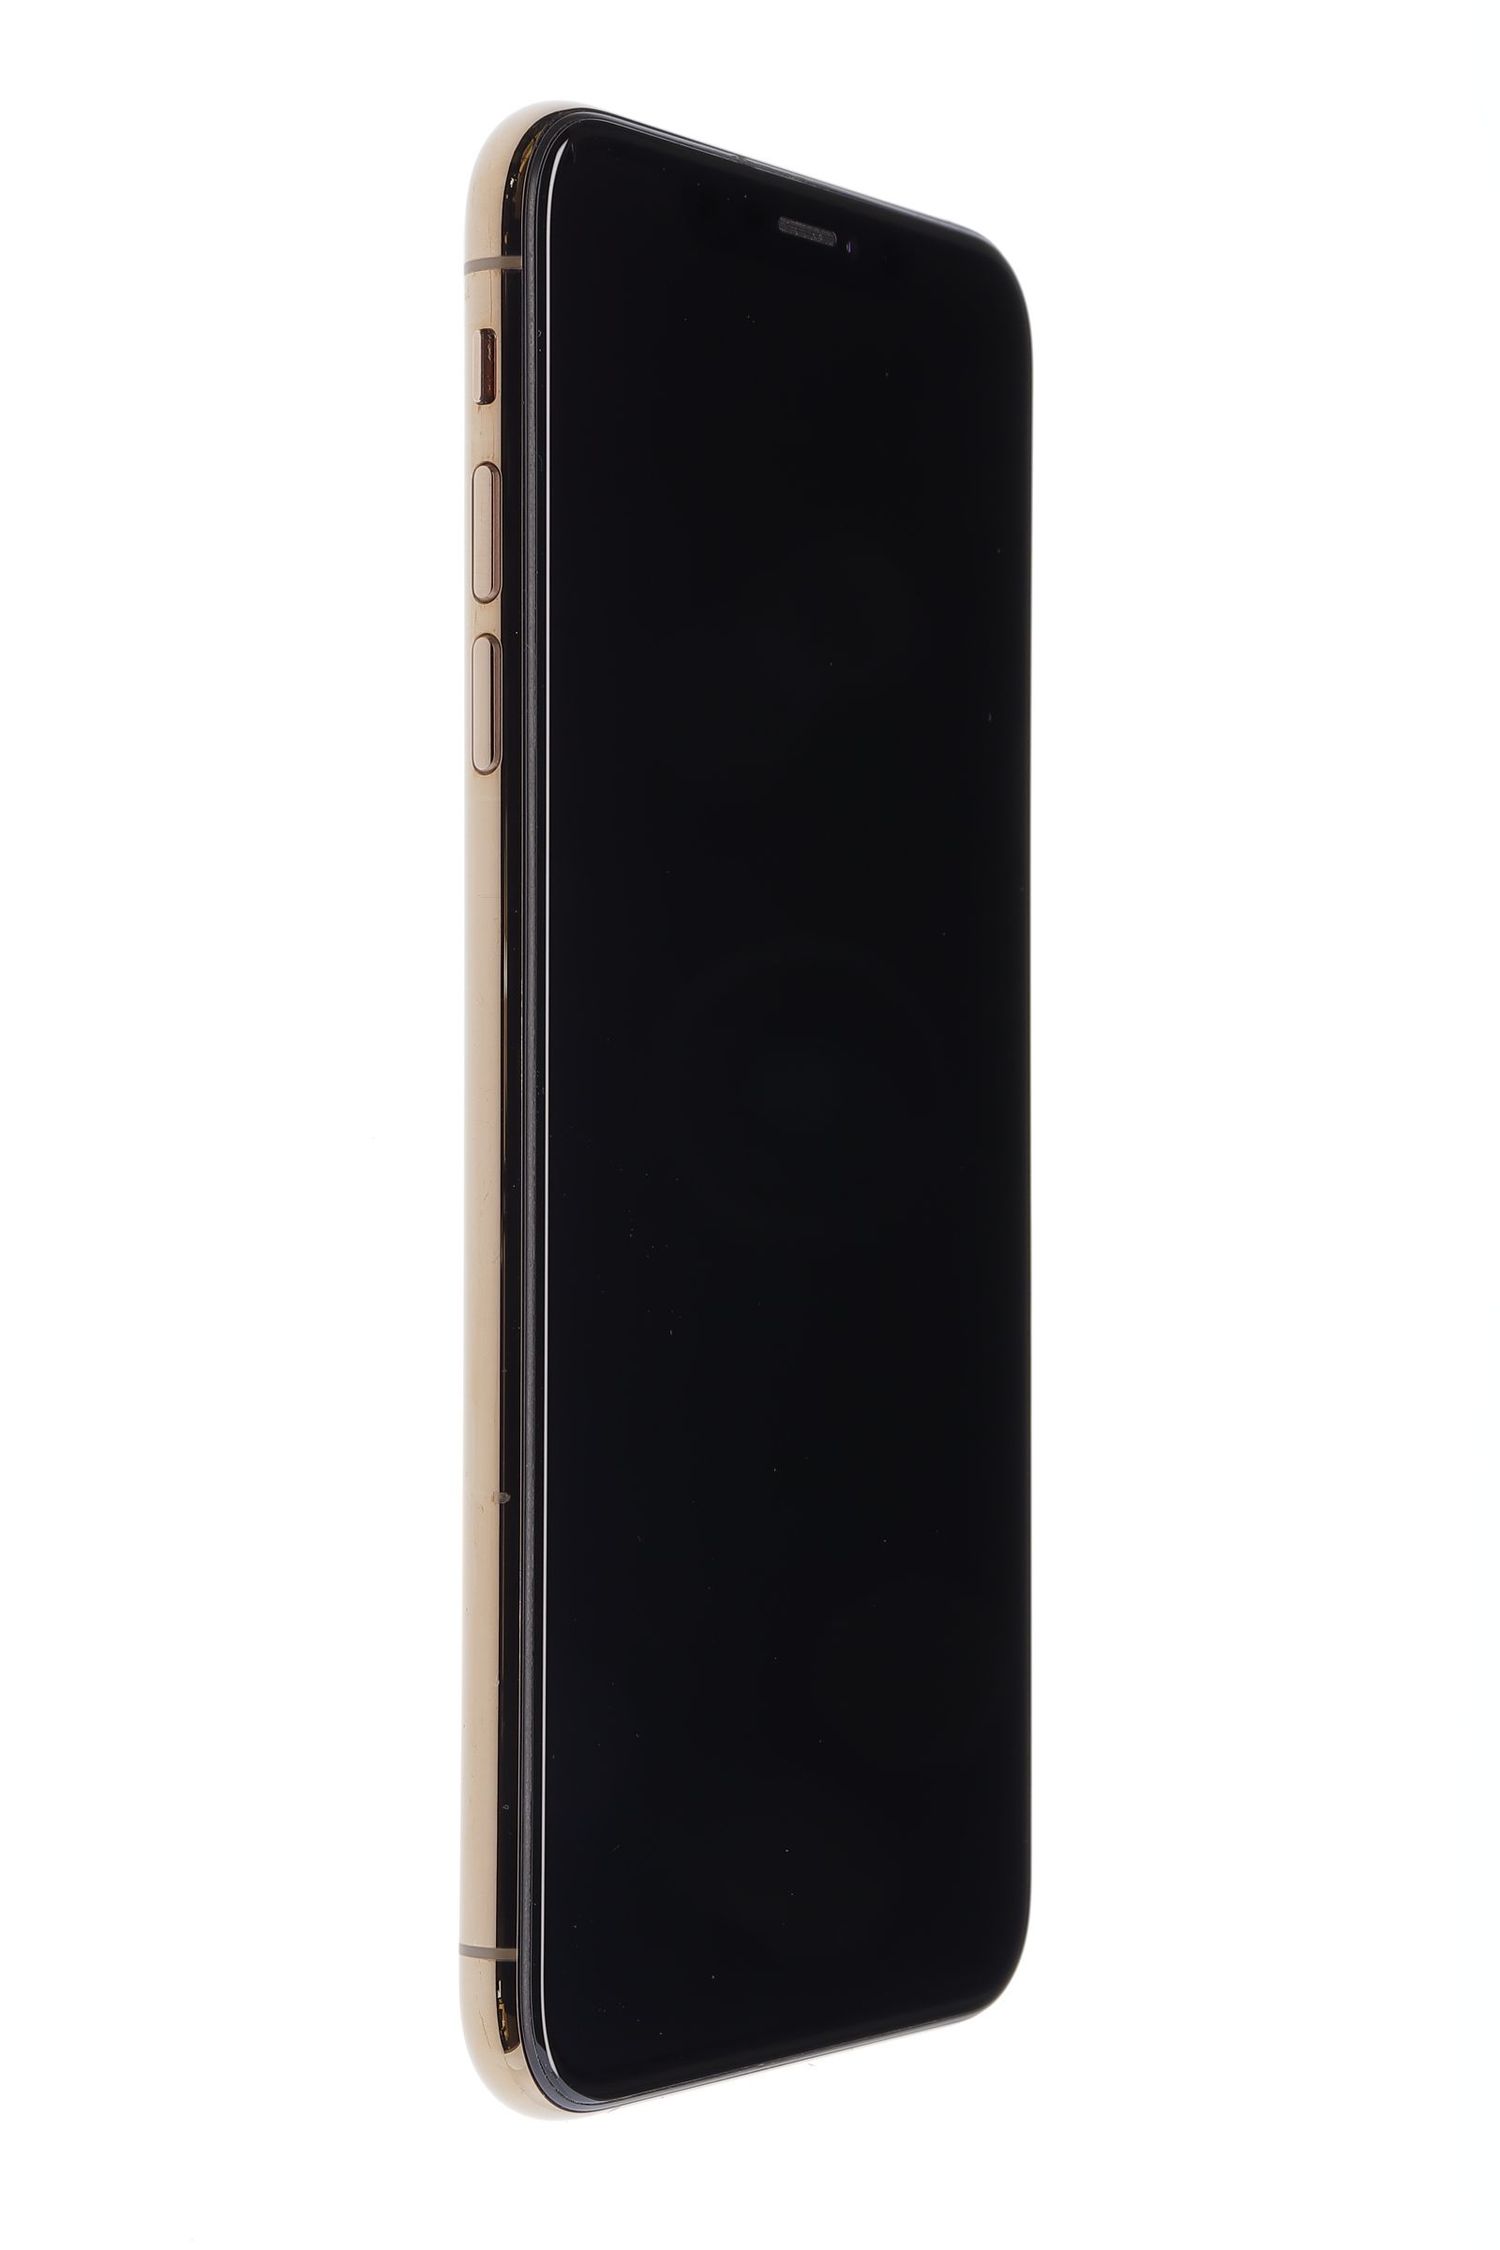 Telefon mobil Apple iPhone XS Max, Gold, 512 GB, Foarte Bun